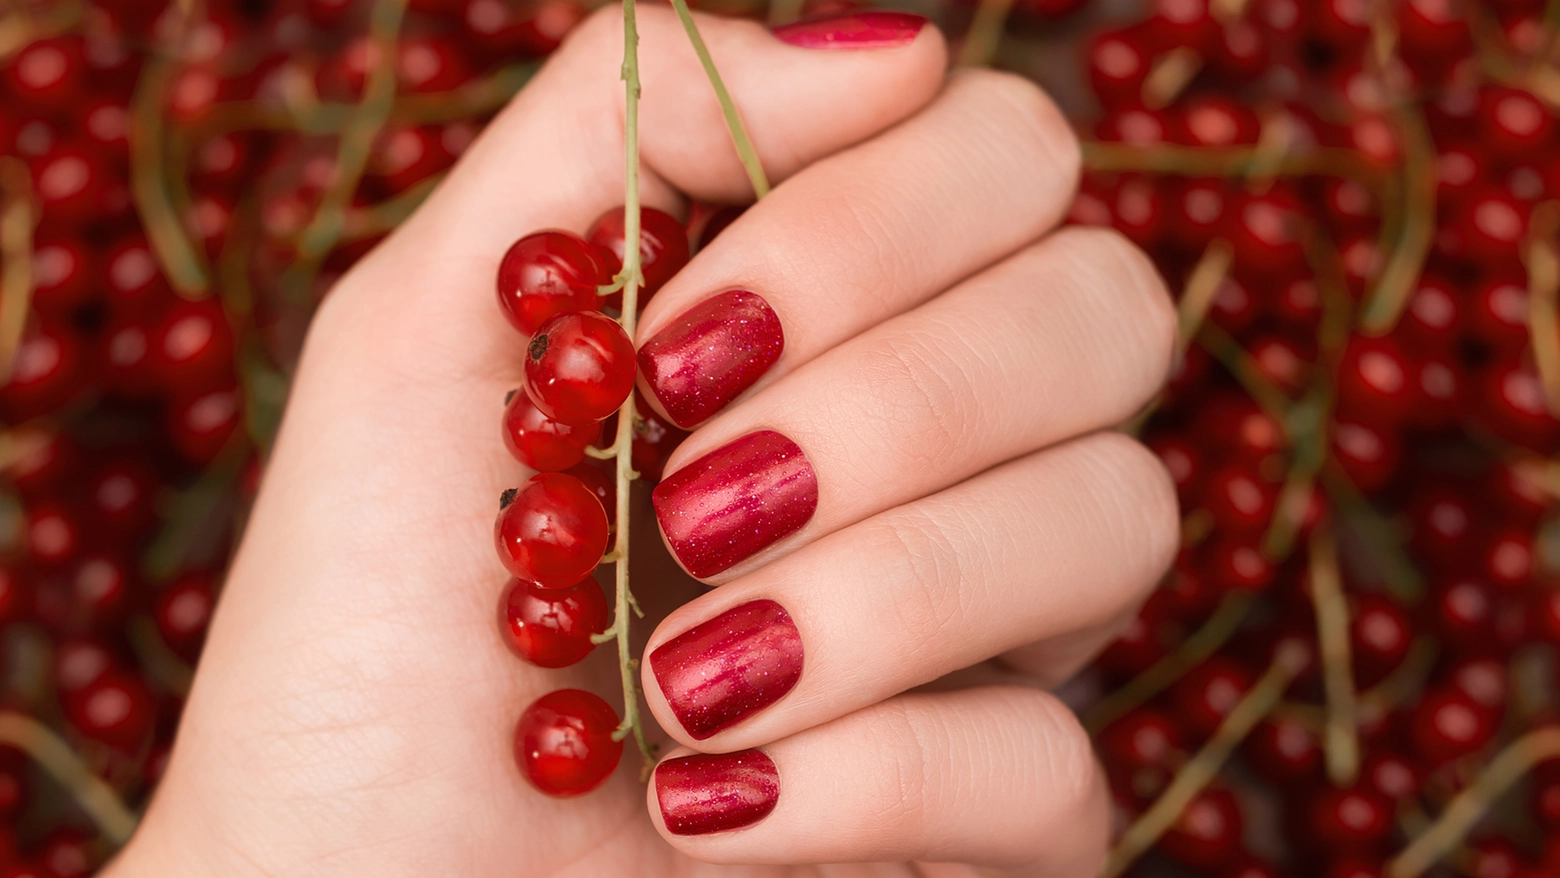 Cherry mocha nails (iStock Photo)